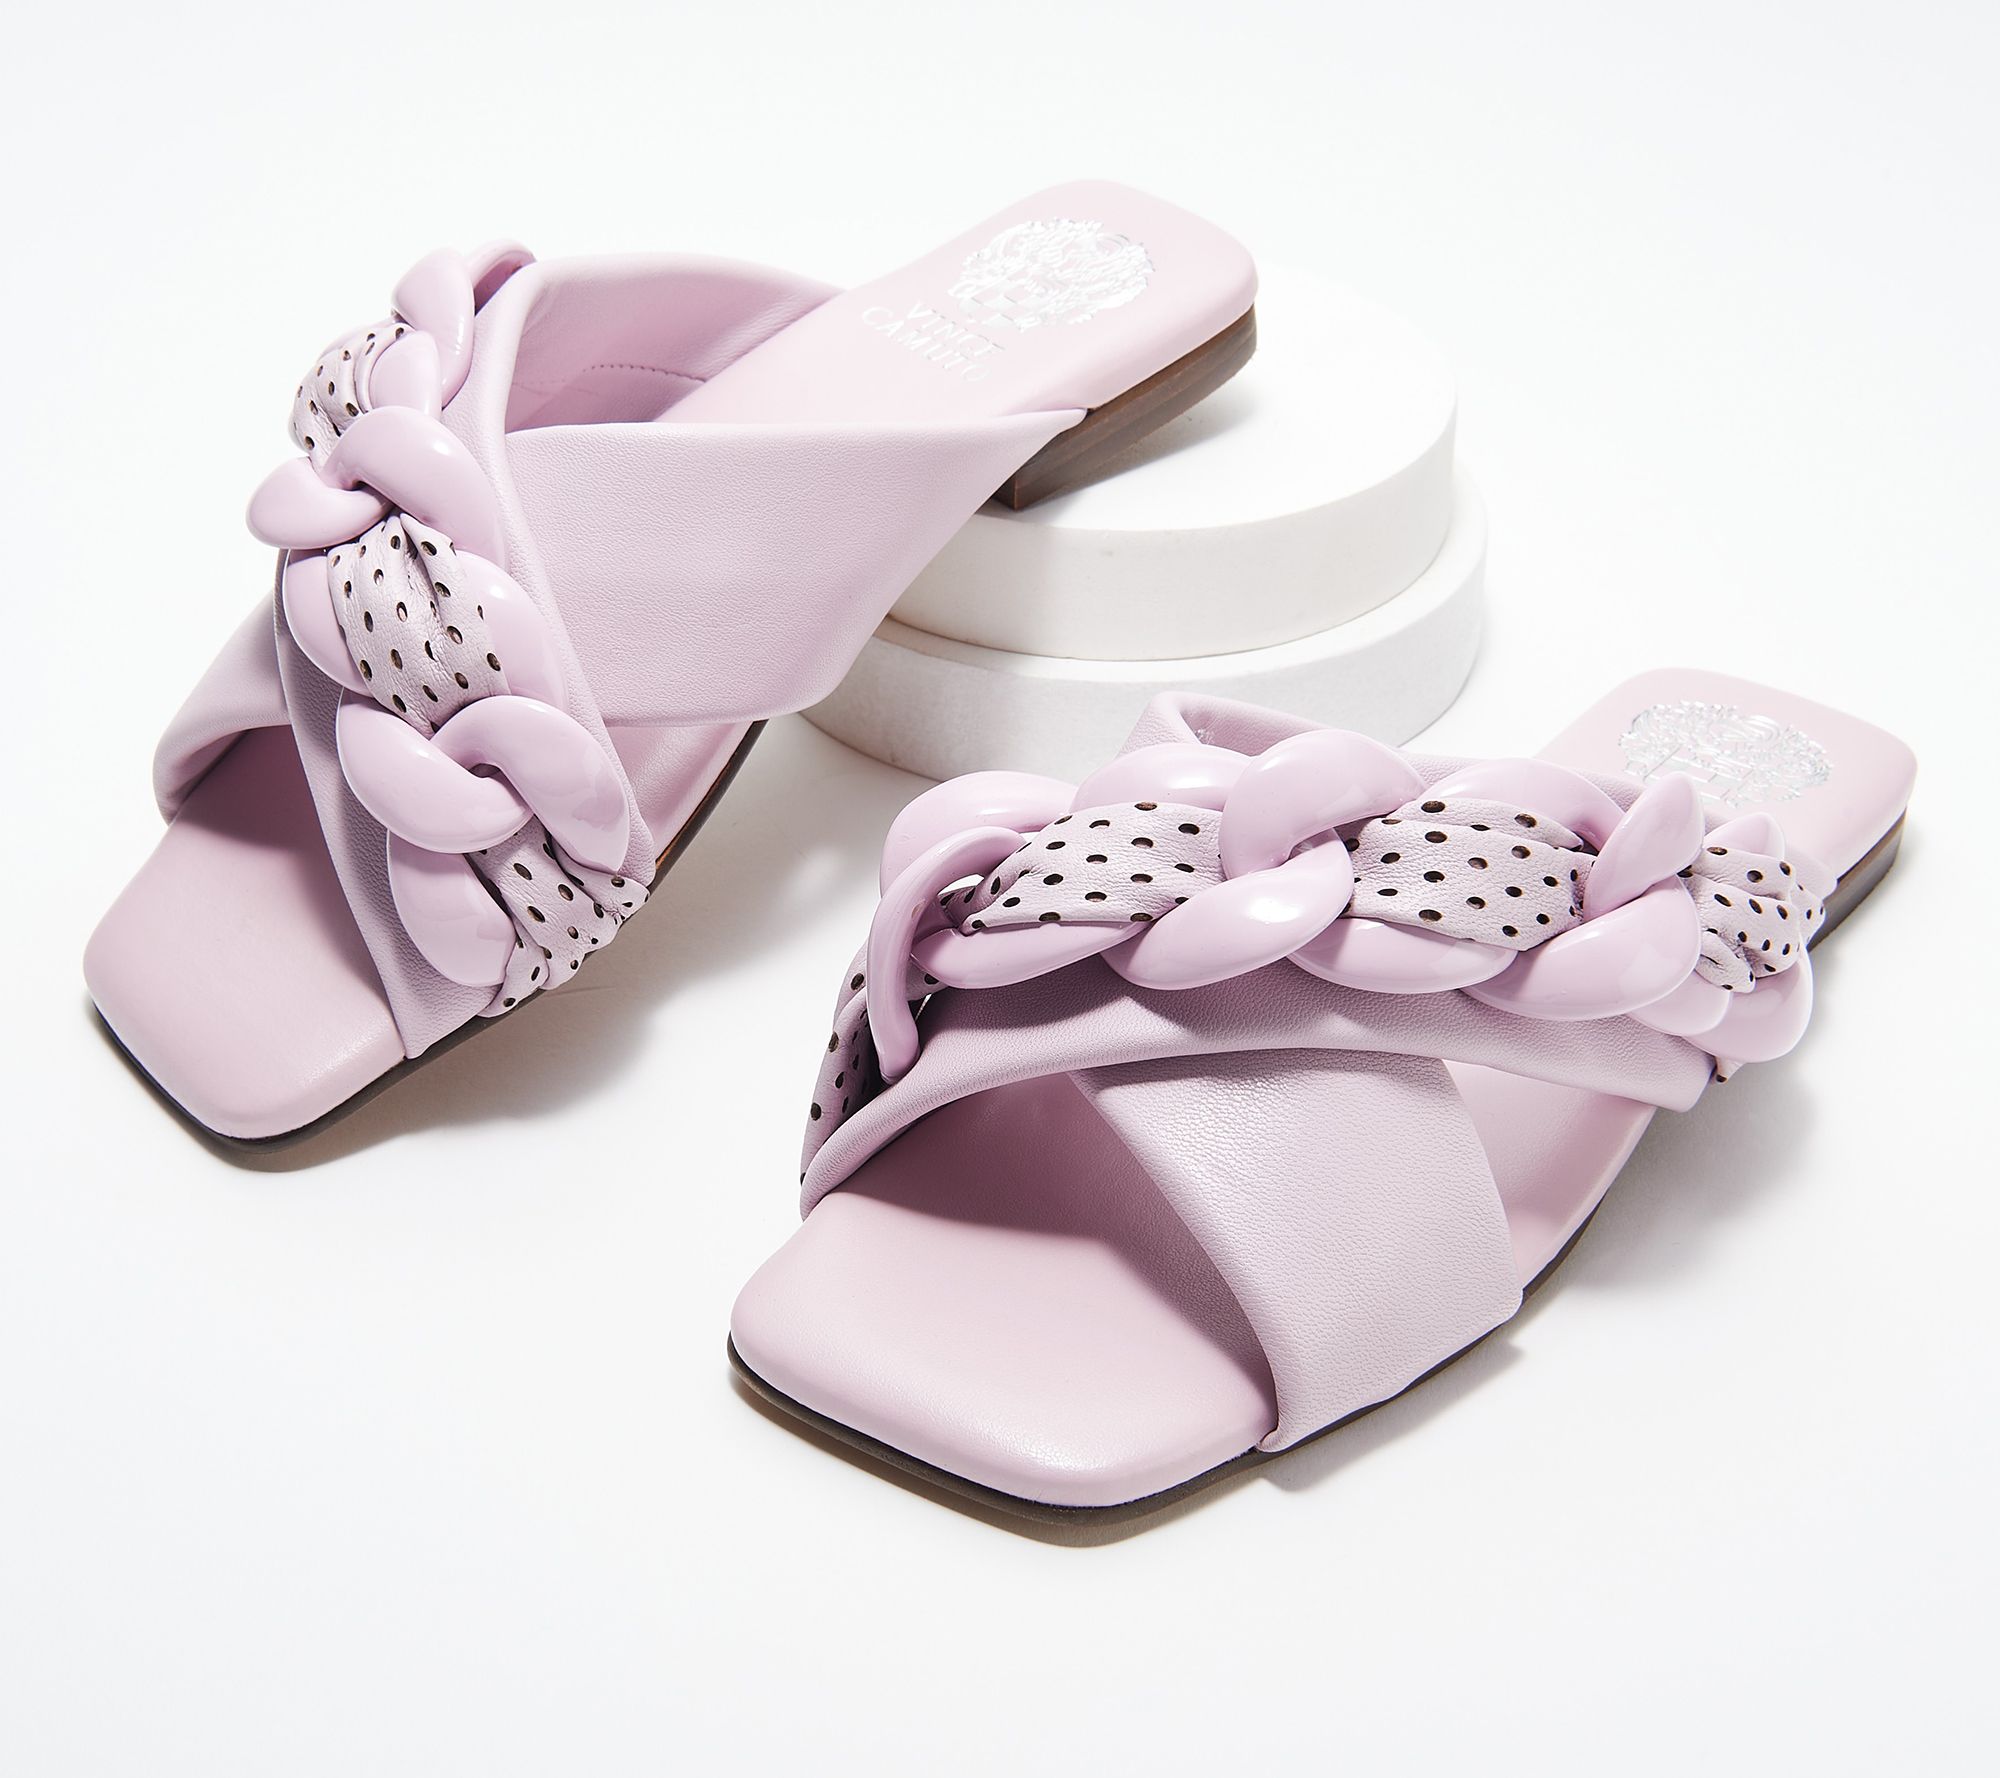 Vince Camuto Women's Purple Sandals